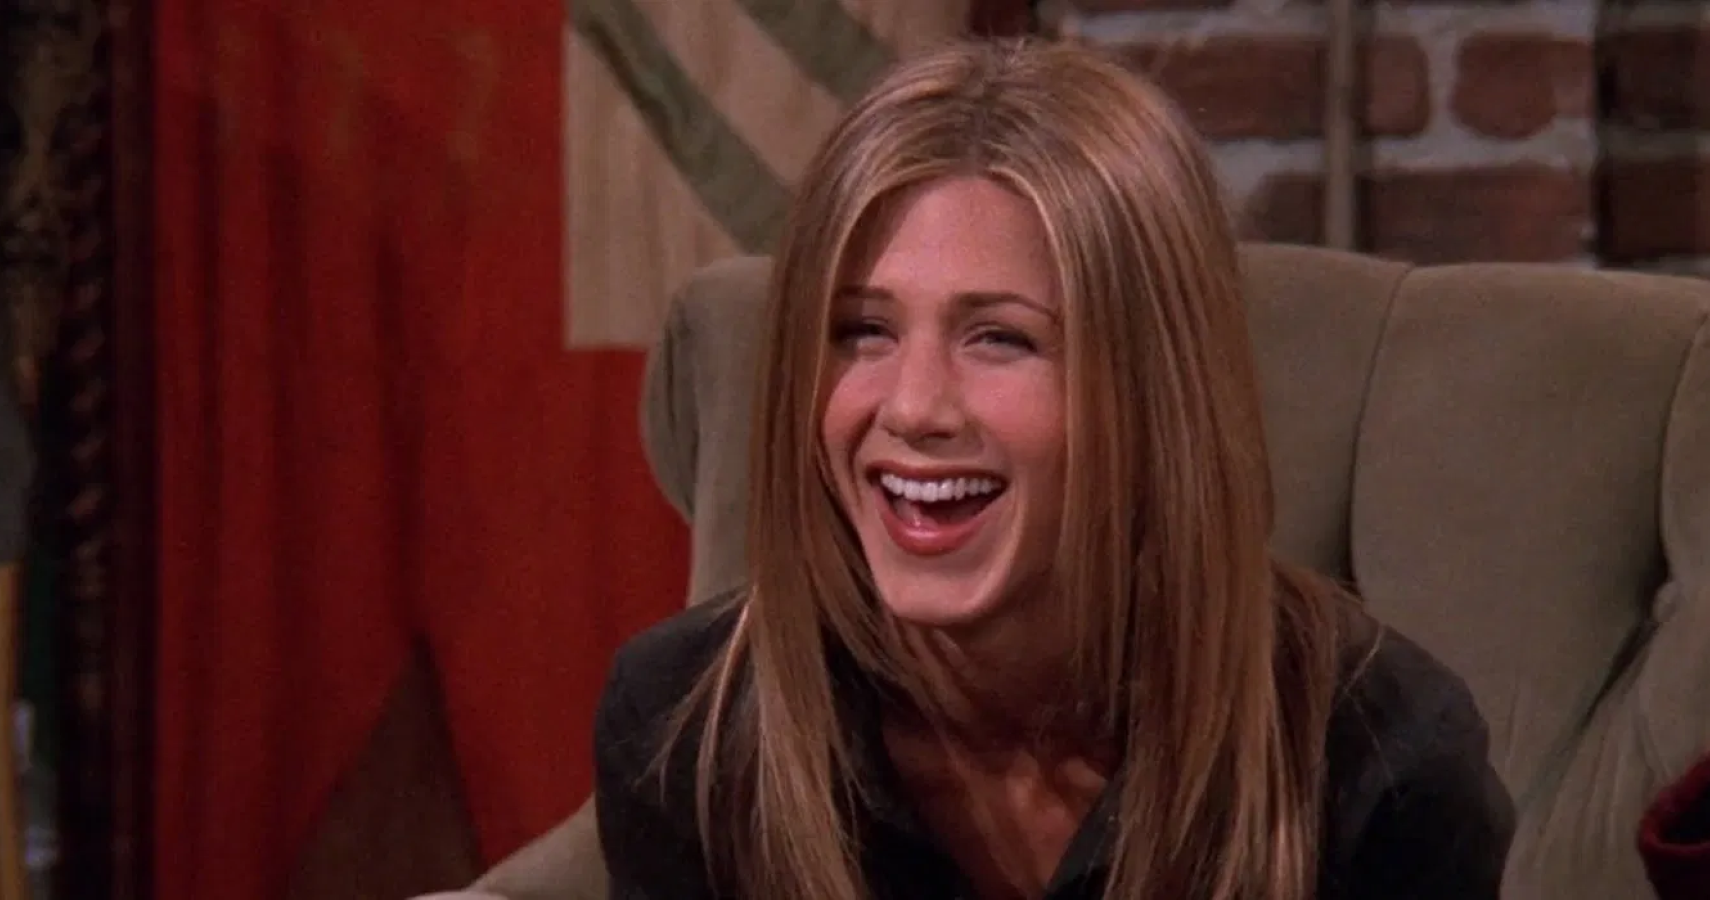 Rachel laughing in Central perk